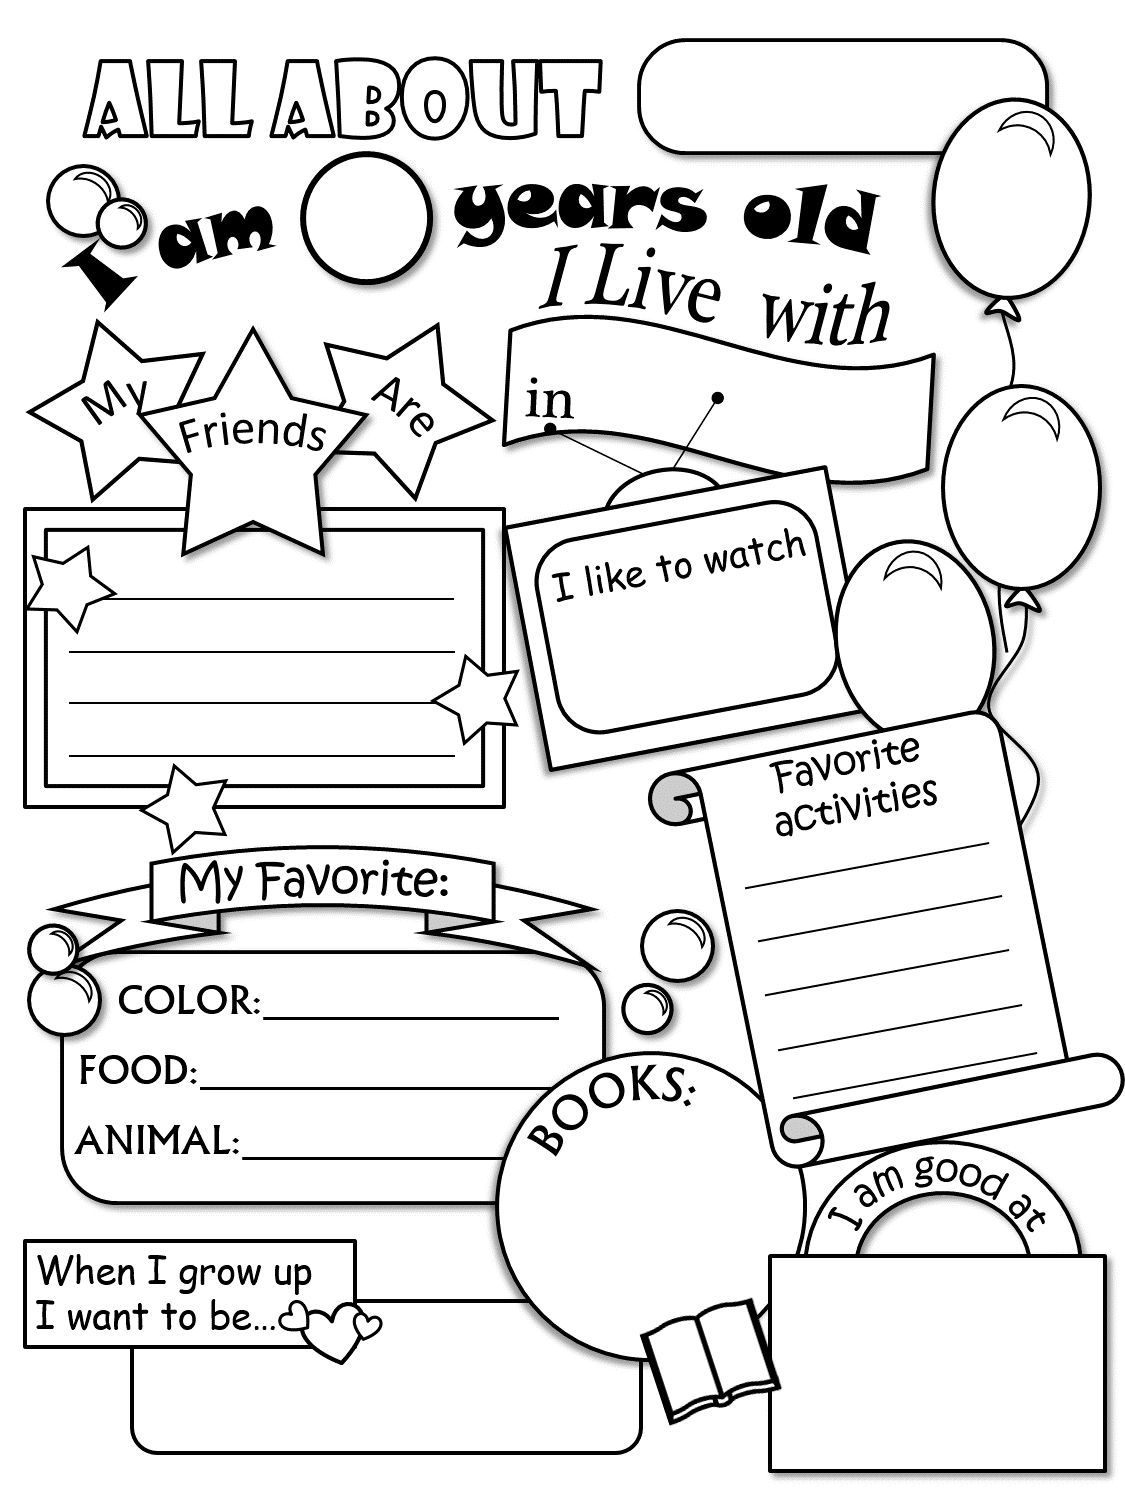 All About Me Worksheet Preschool Printable Printable Worksheets